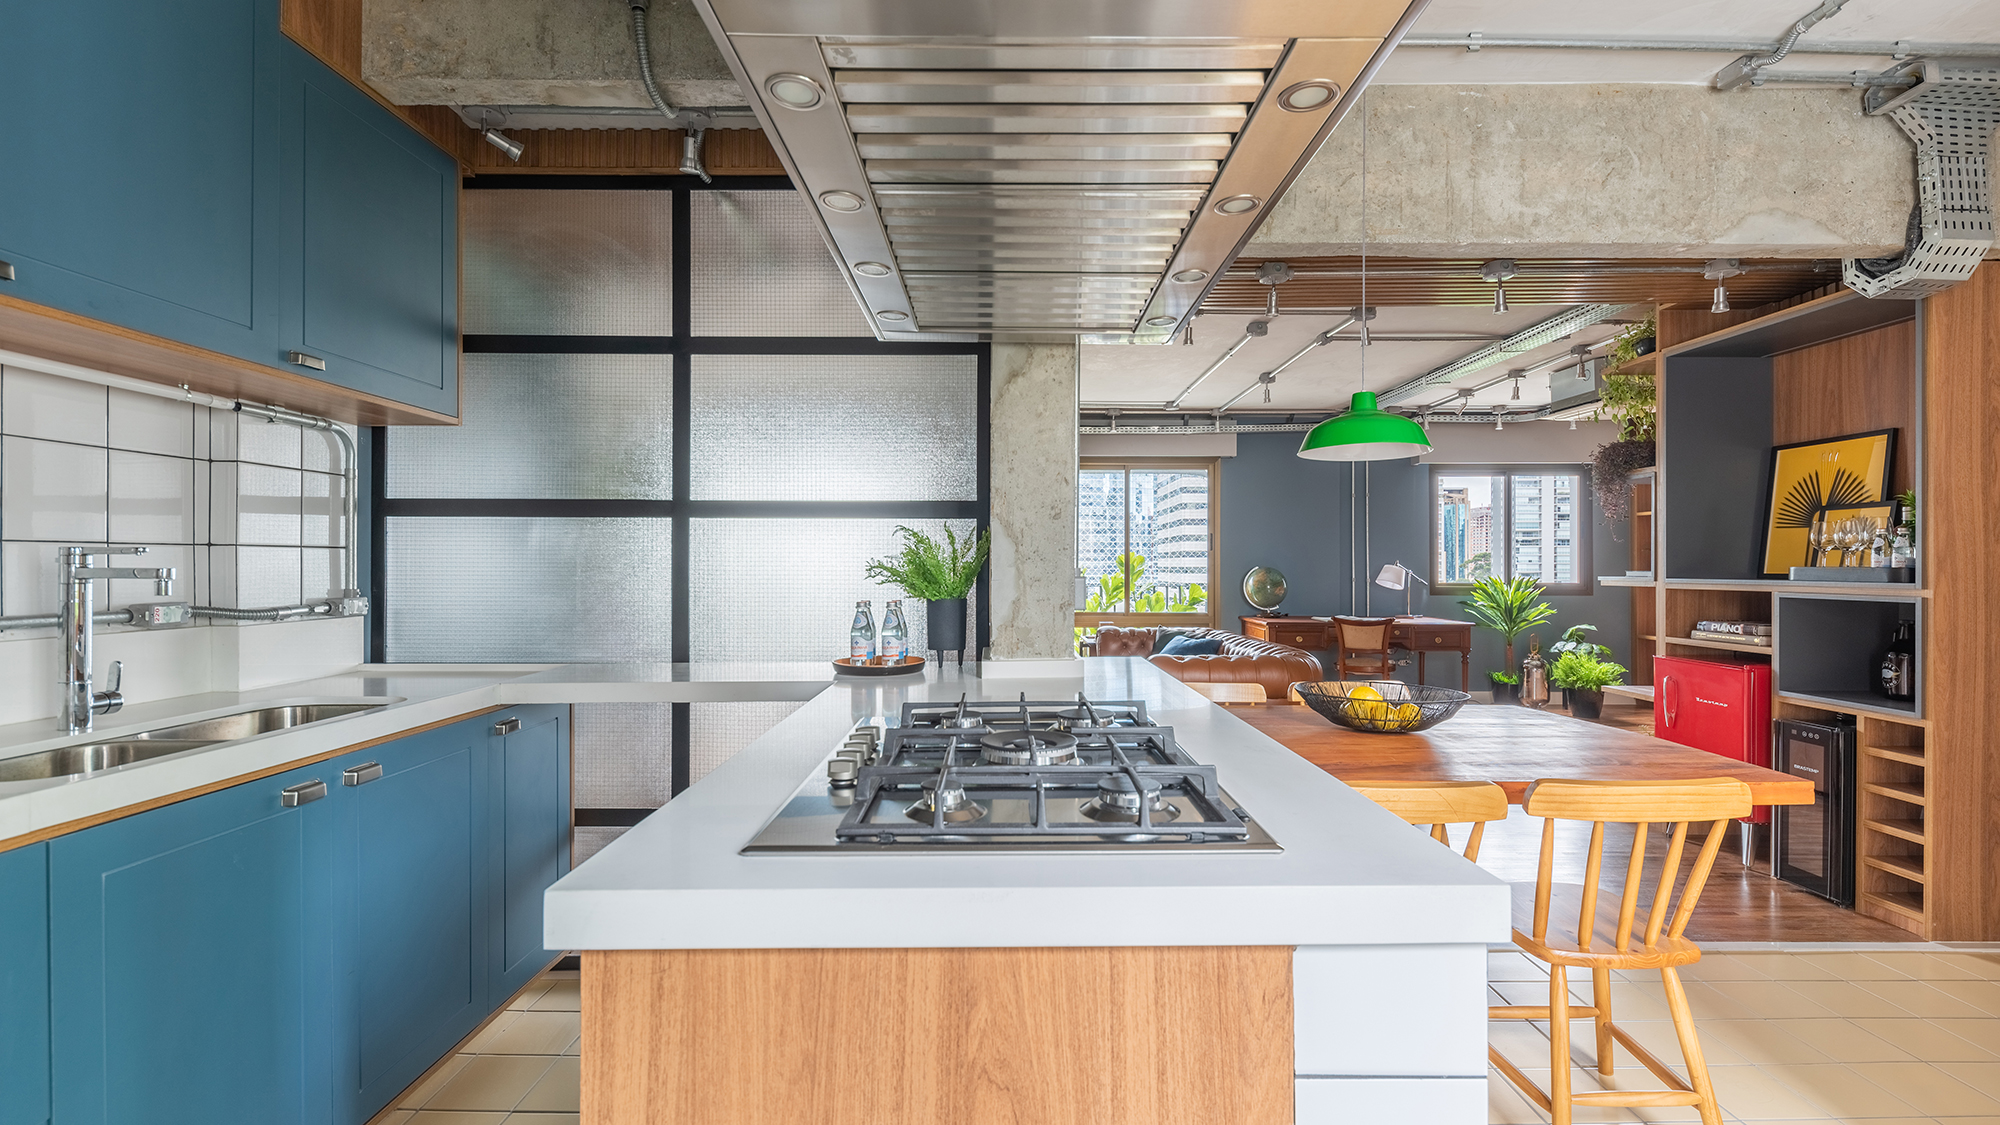 Estilo industrial e elementos clássicos se unem em apartamento de 130 m². Projeto de Pietro Terlizzi. Na foto, cozinha com marcenaria azul e tiles na parede. Sala de jantar integrada ao social.